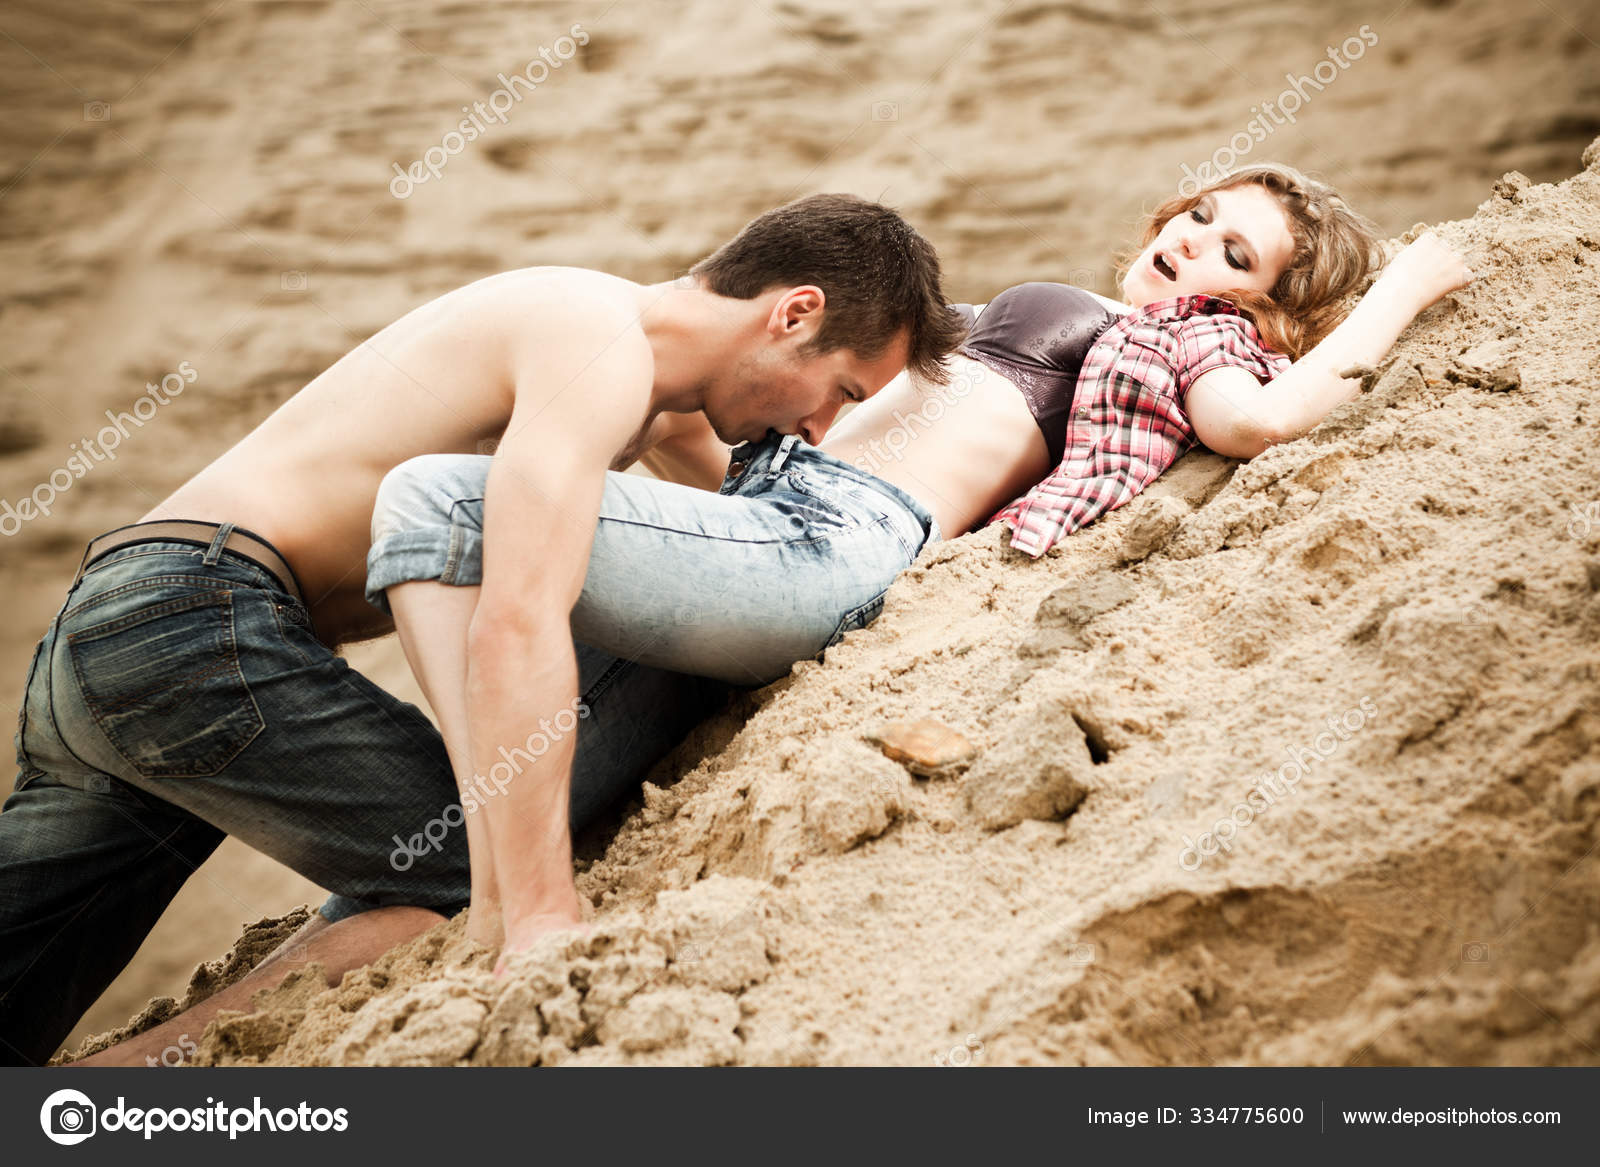 Парень лежит на девушке. Страсть на песке. Парень и девушка на песке. Мужчина лежит на песке. Пара лежит на песке.